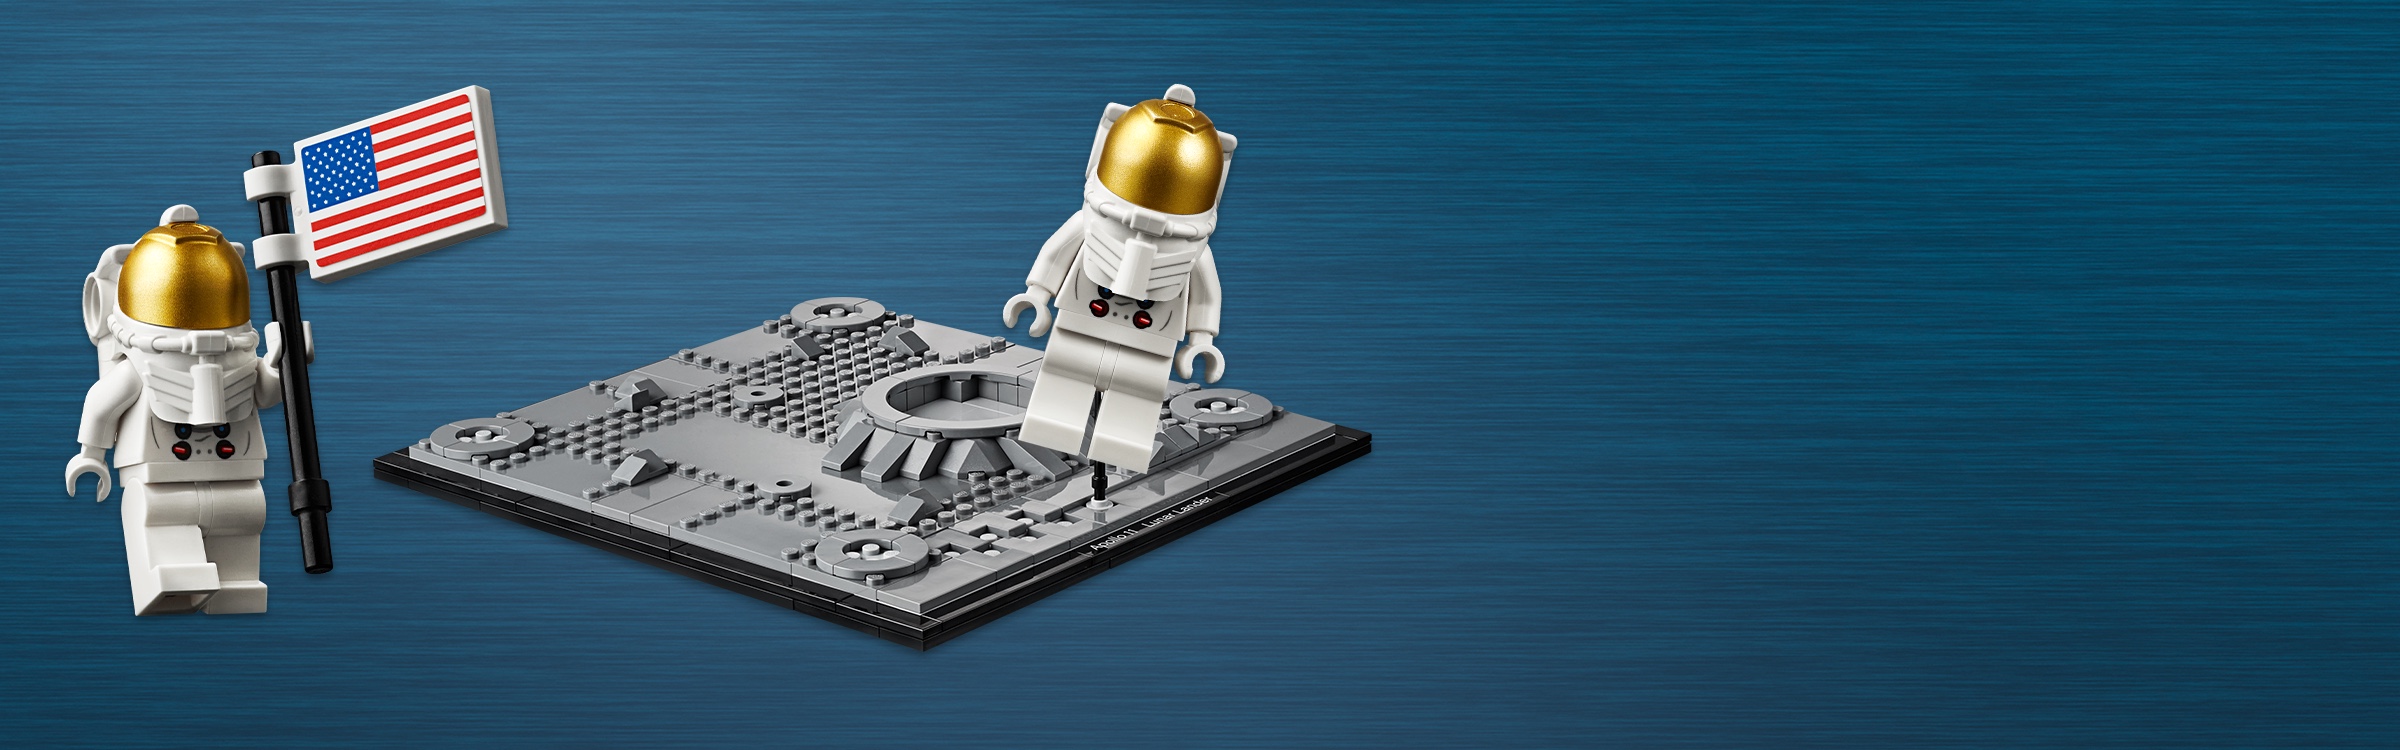 LEGO Creator Expert NASA Apollo 11 Lunar Lander 10266 Building Kit